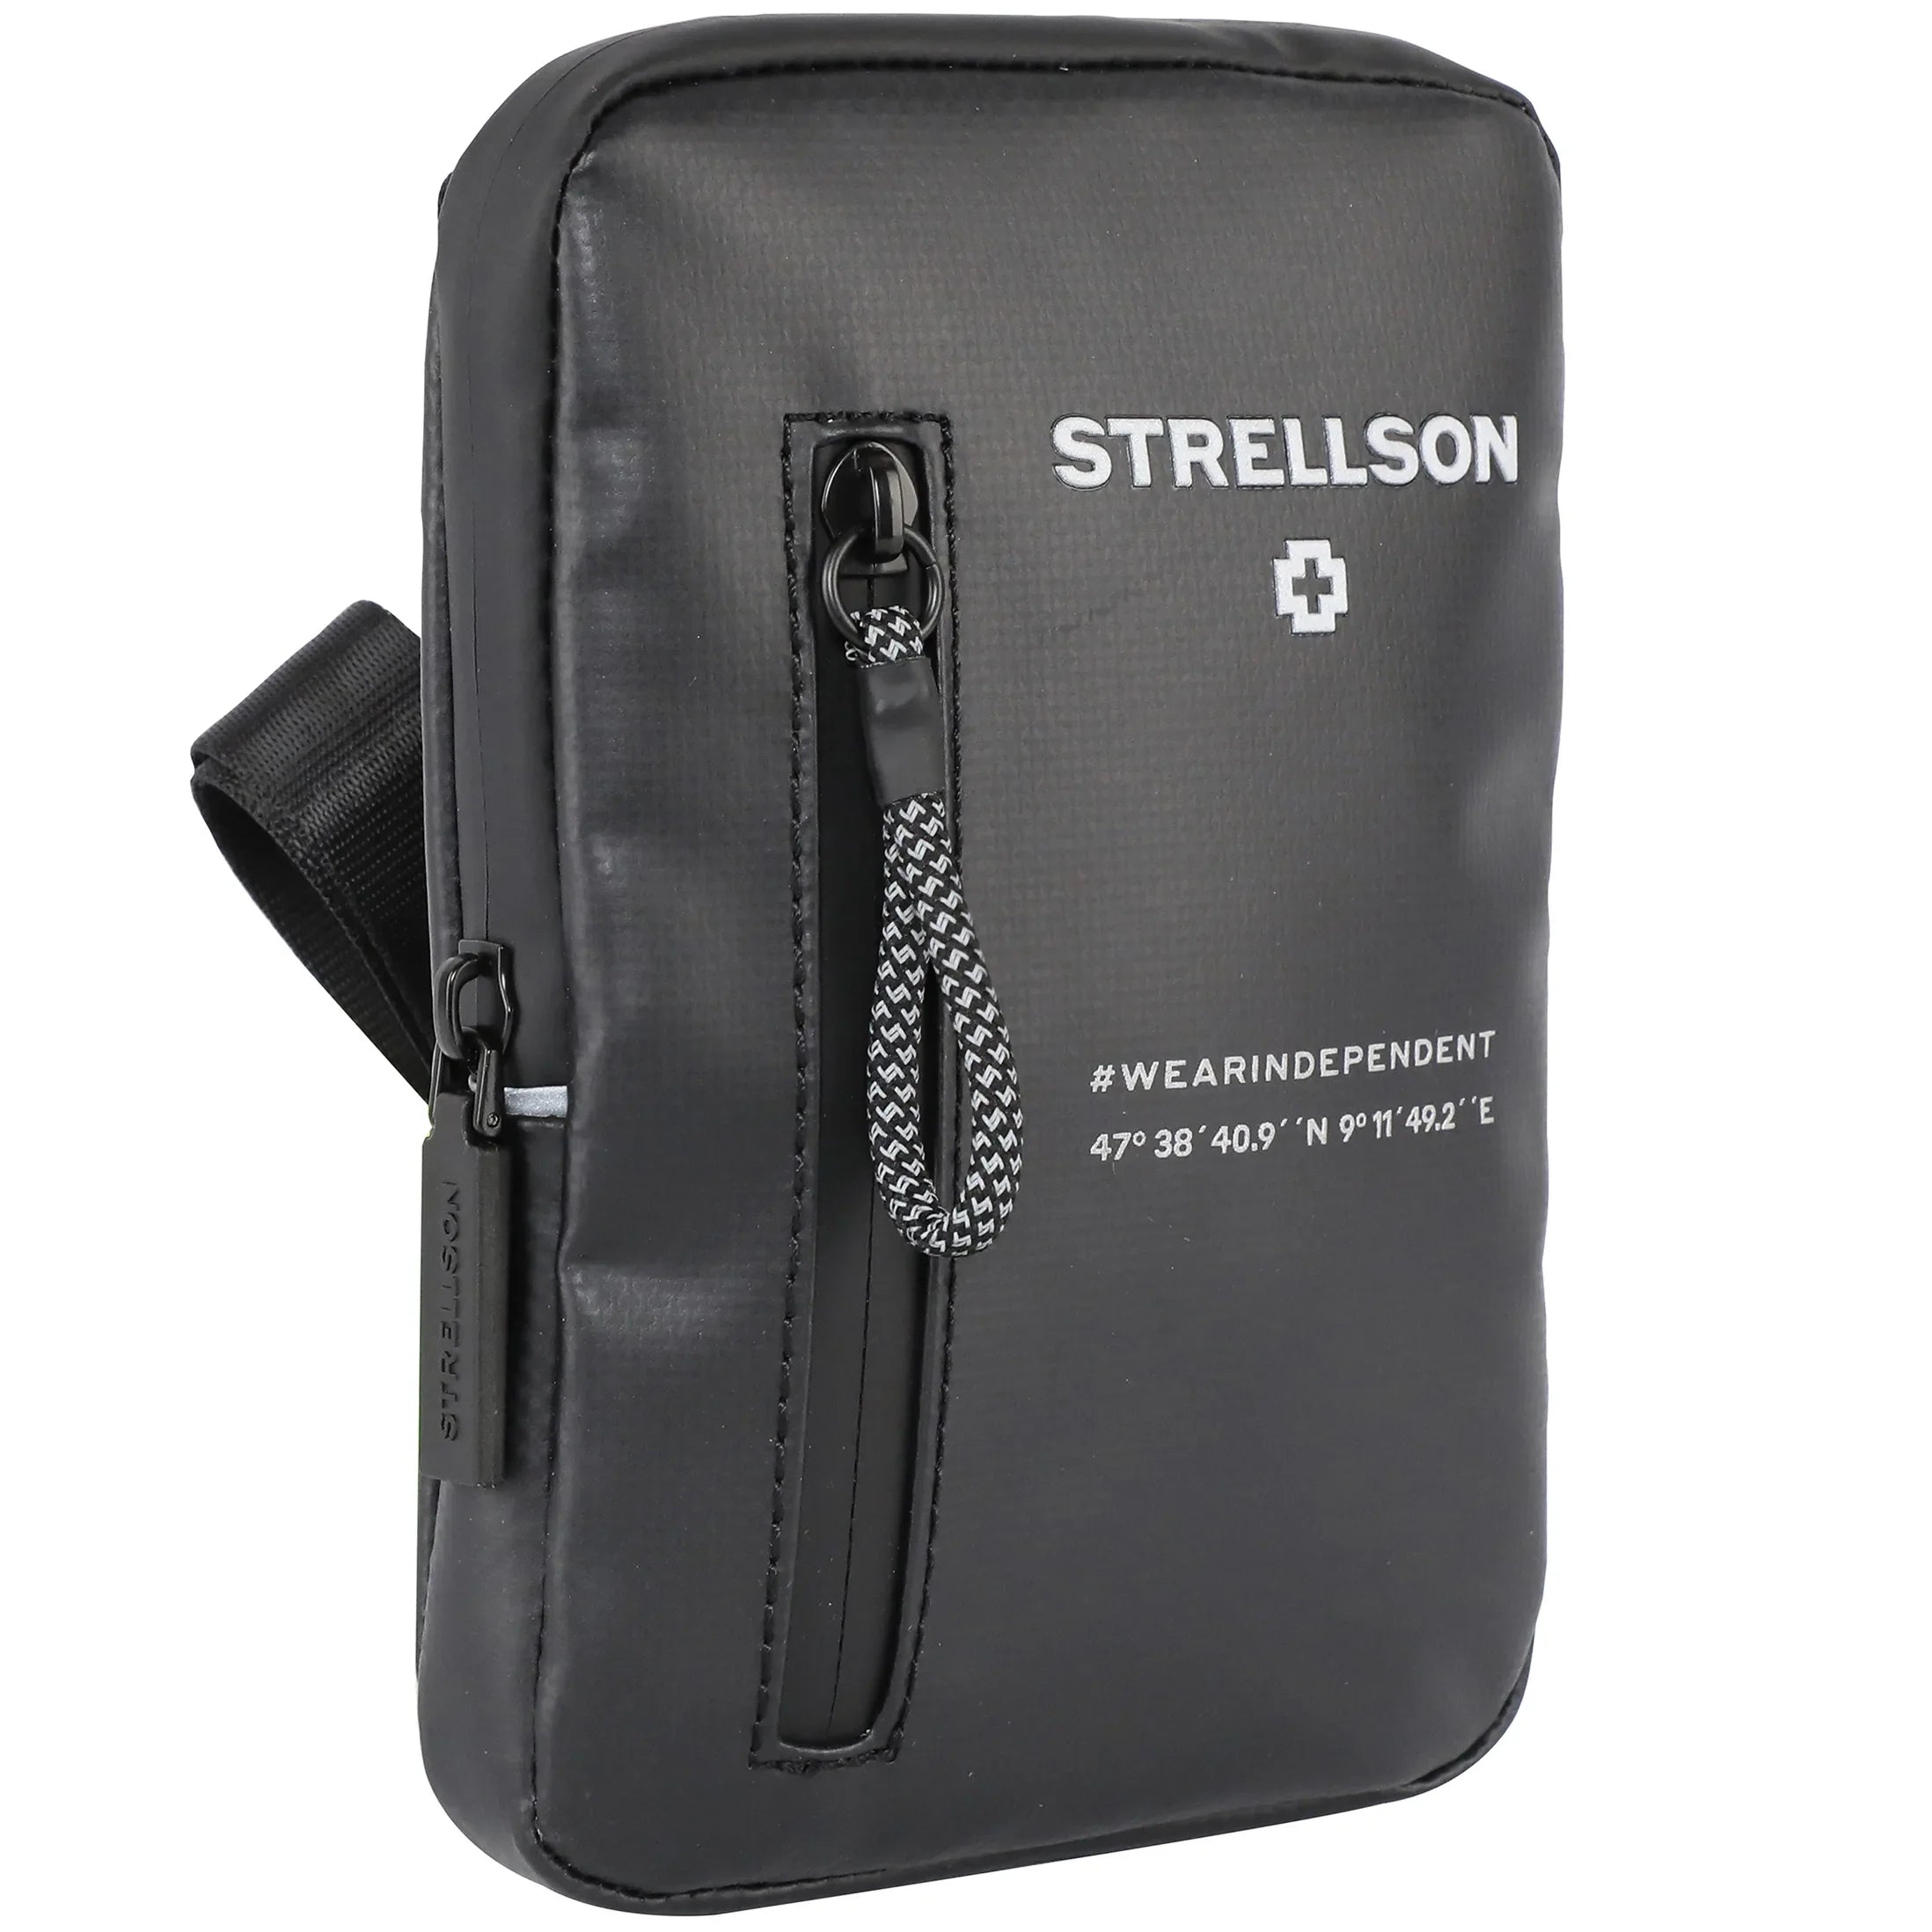 Strellson Stockwell 2.0 Shoulderbag XSVZ 19 cm - Black